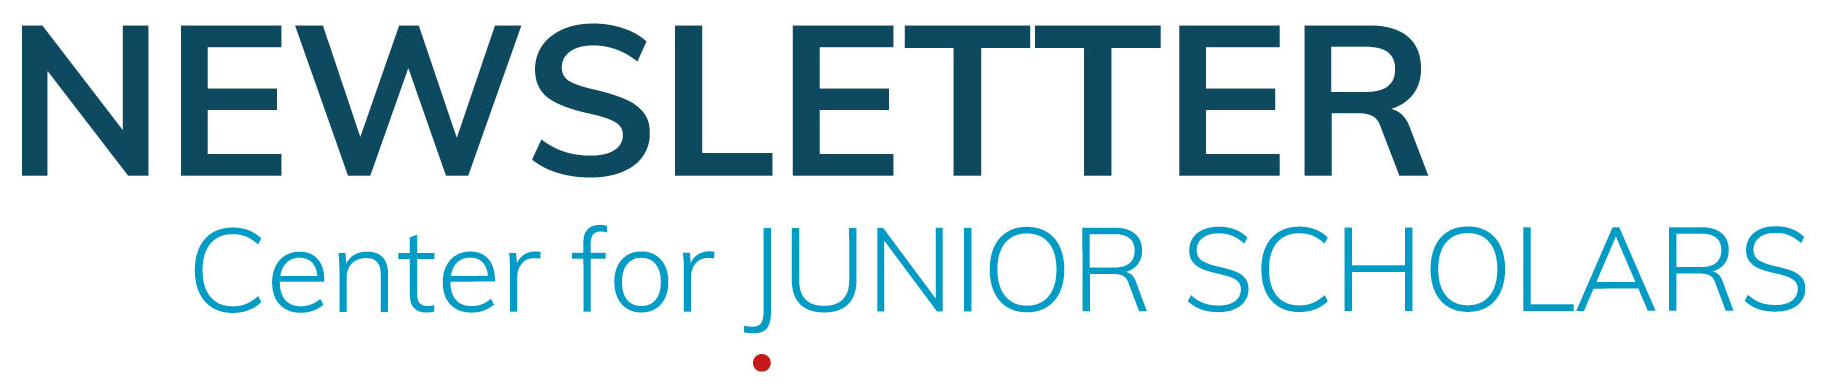 Newsletter Center for Junior Scholars